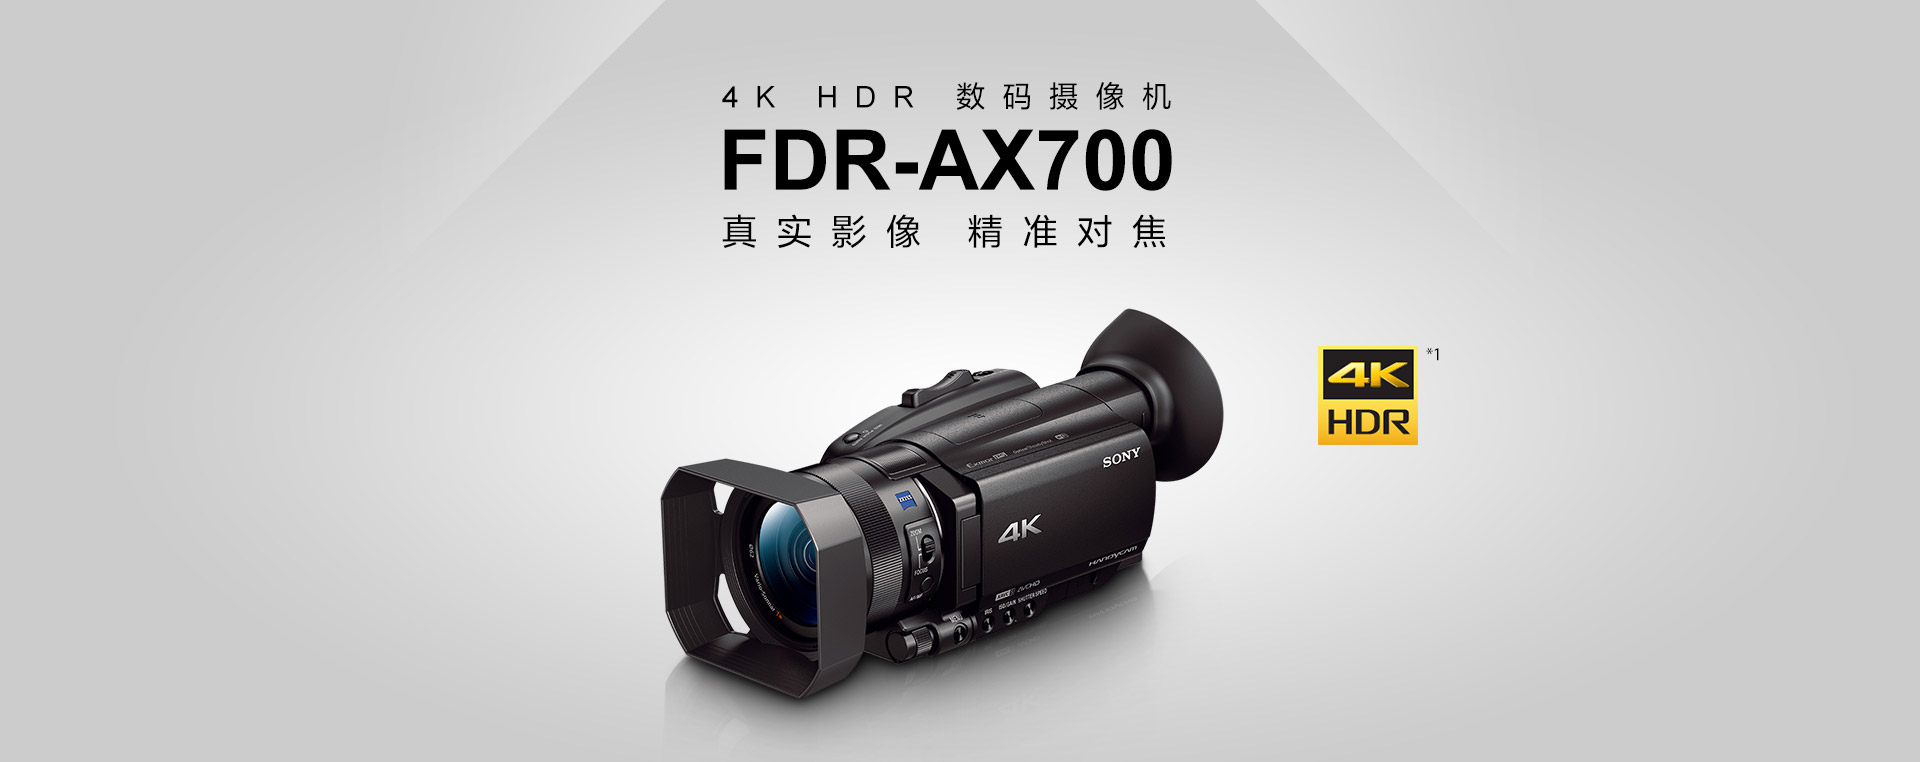 FDR-AX700 真实影像 精准对焦 4kHDR